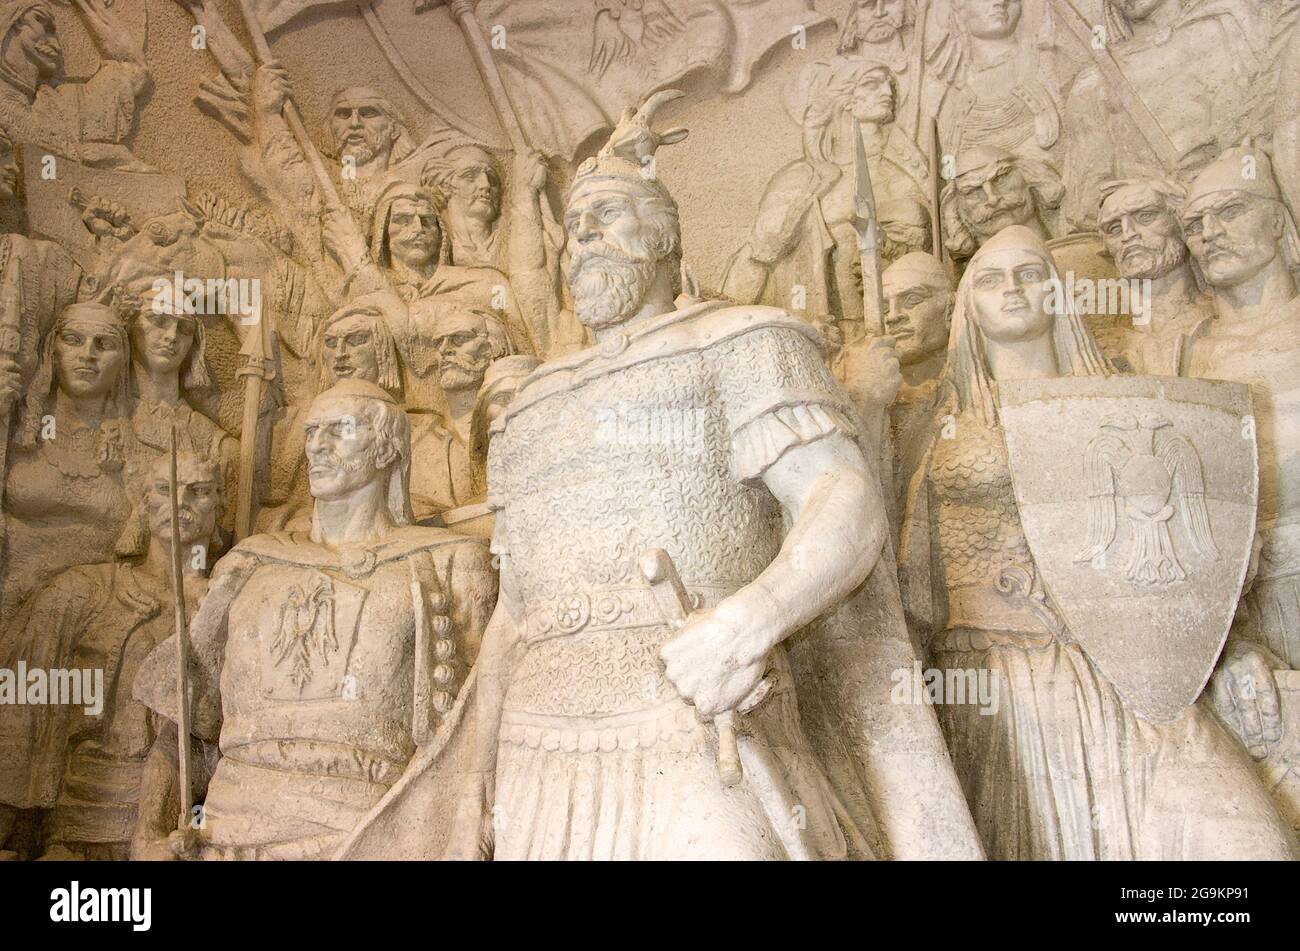 Kruja, Albania - 23 luglio 2012: Un gruppo scultoreo guidato dall'eroe nazionale G. K. Skanderbeg si trova nella Natio Foto Stock